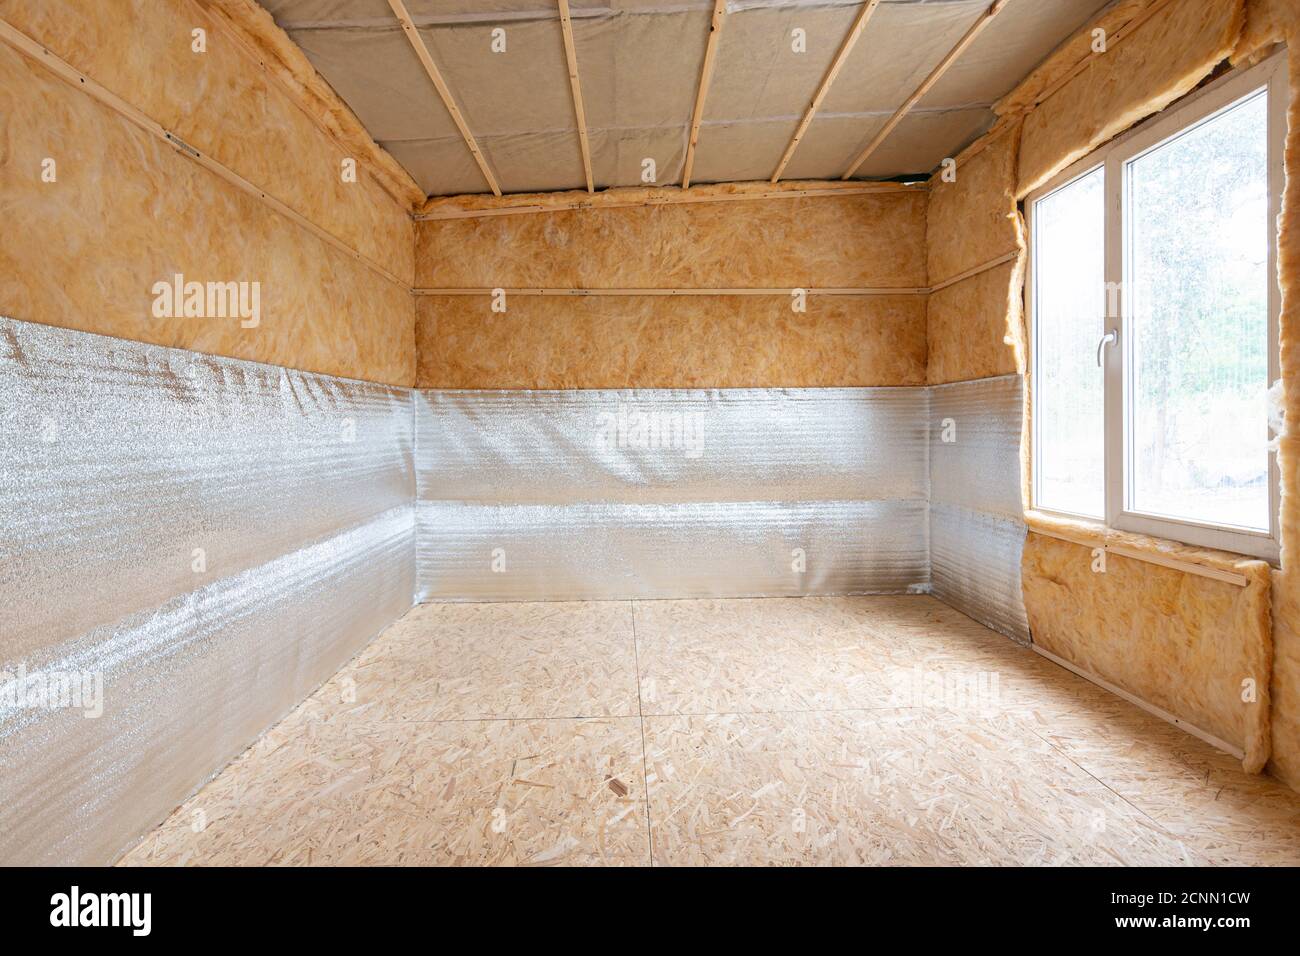 Intérieur d'une maison de campagne, une couche d'isolation thermique de mousse de polyéthylène réflective laminée avec lavsan lors de l'isolation d'un hou Banque D'Images